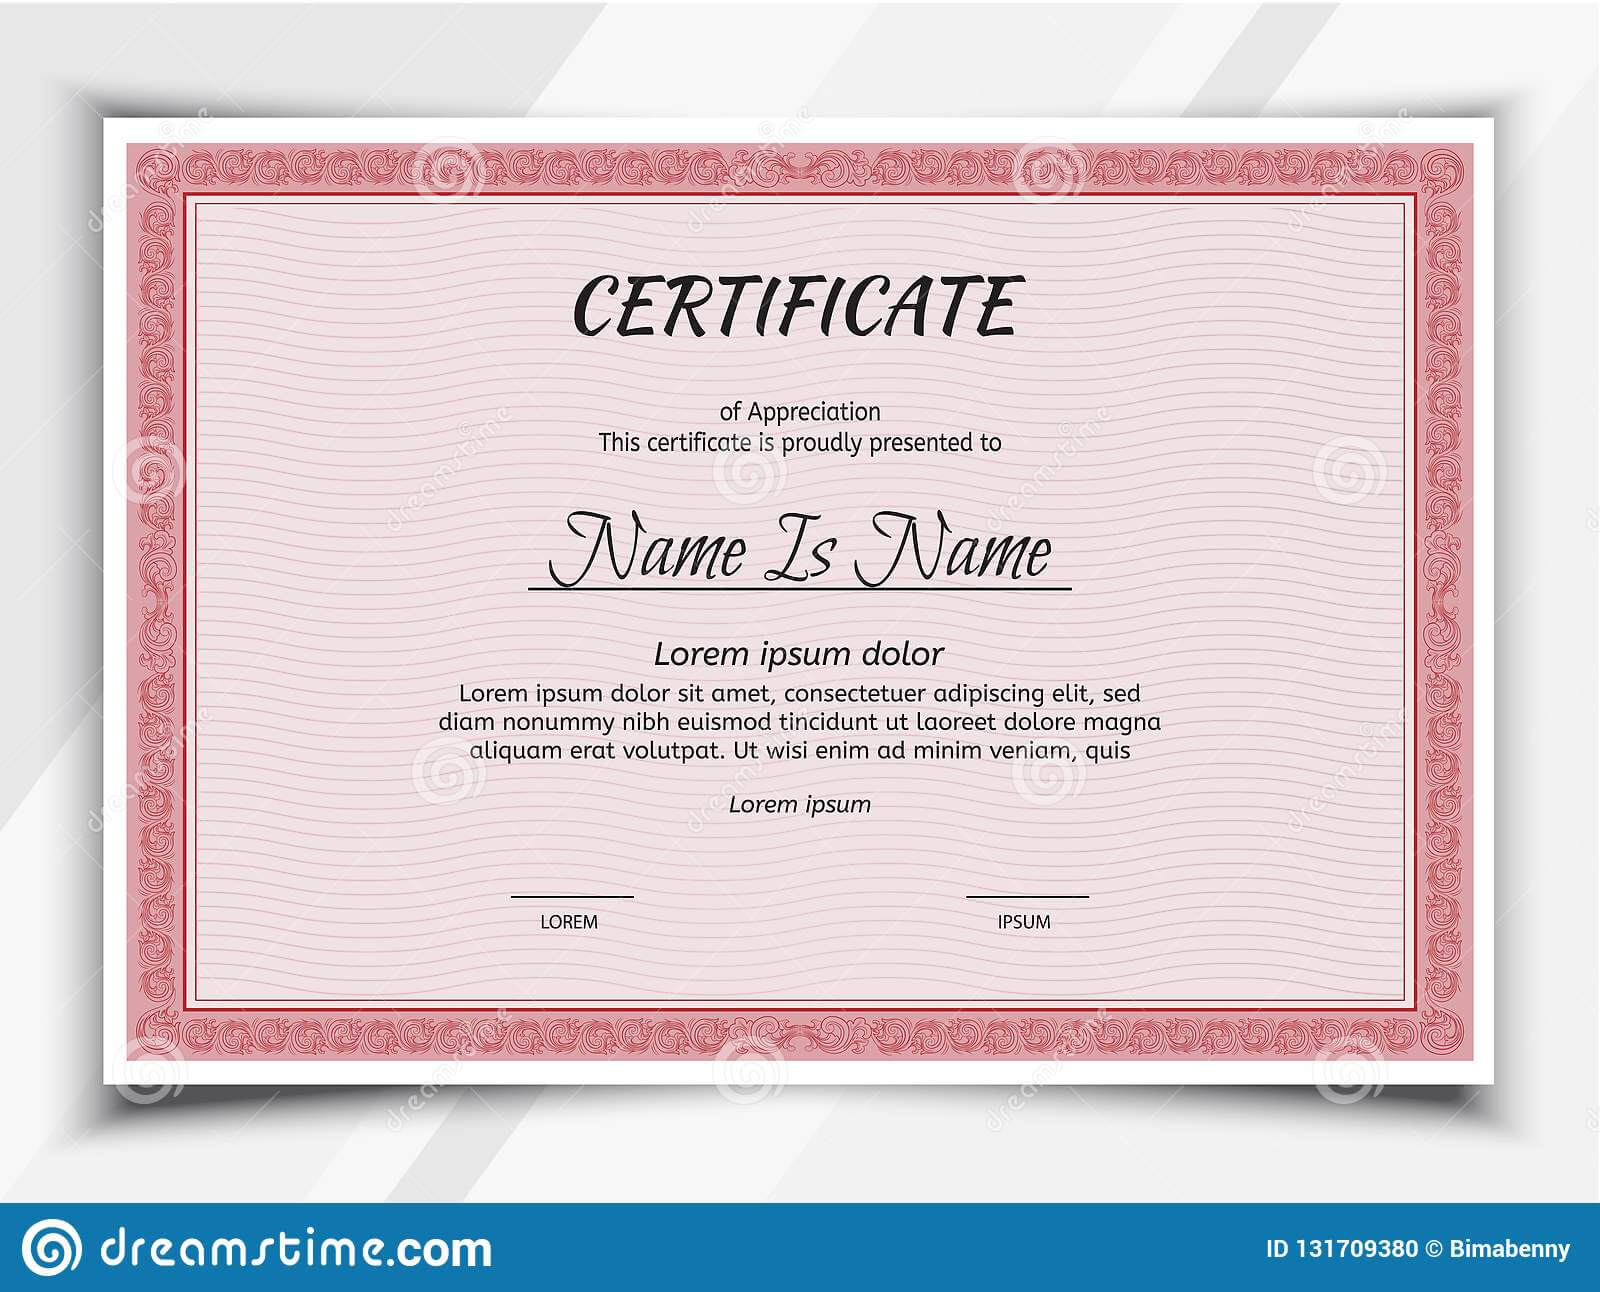 Certificate Landscape Template Stock Vector – Illustration Inside Landscape Certificate Templates